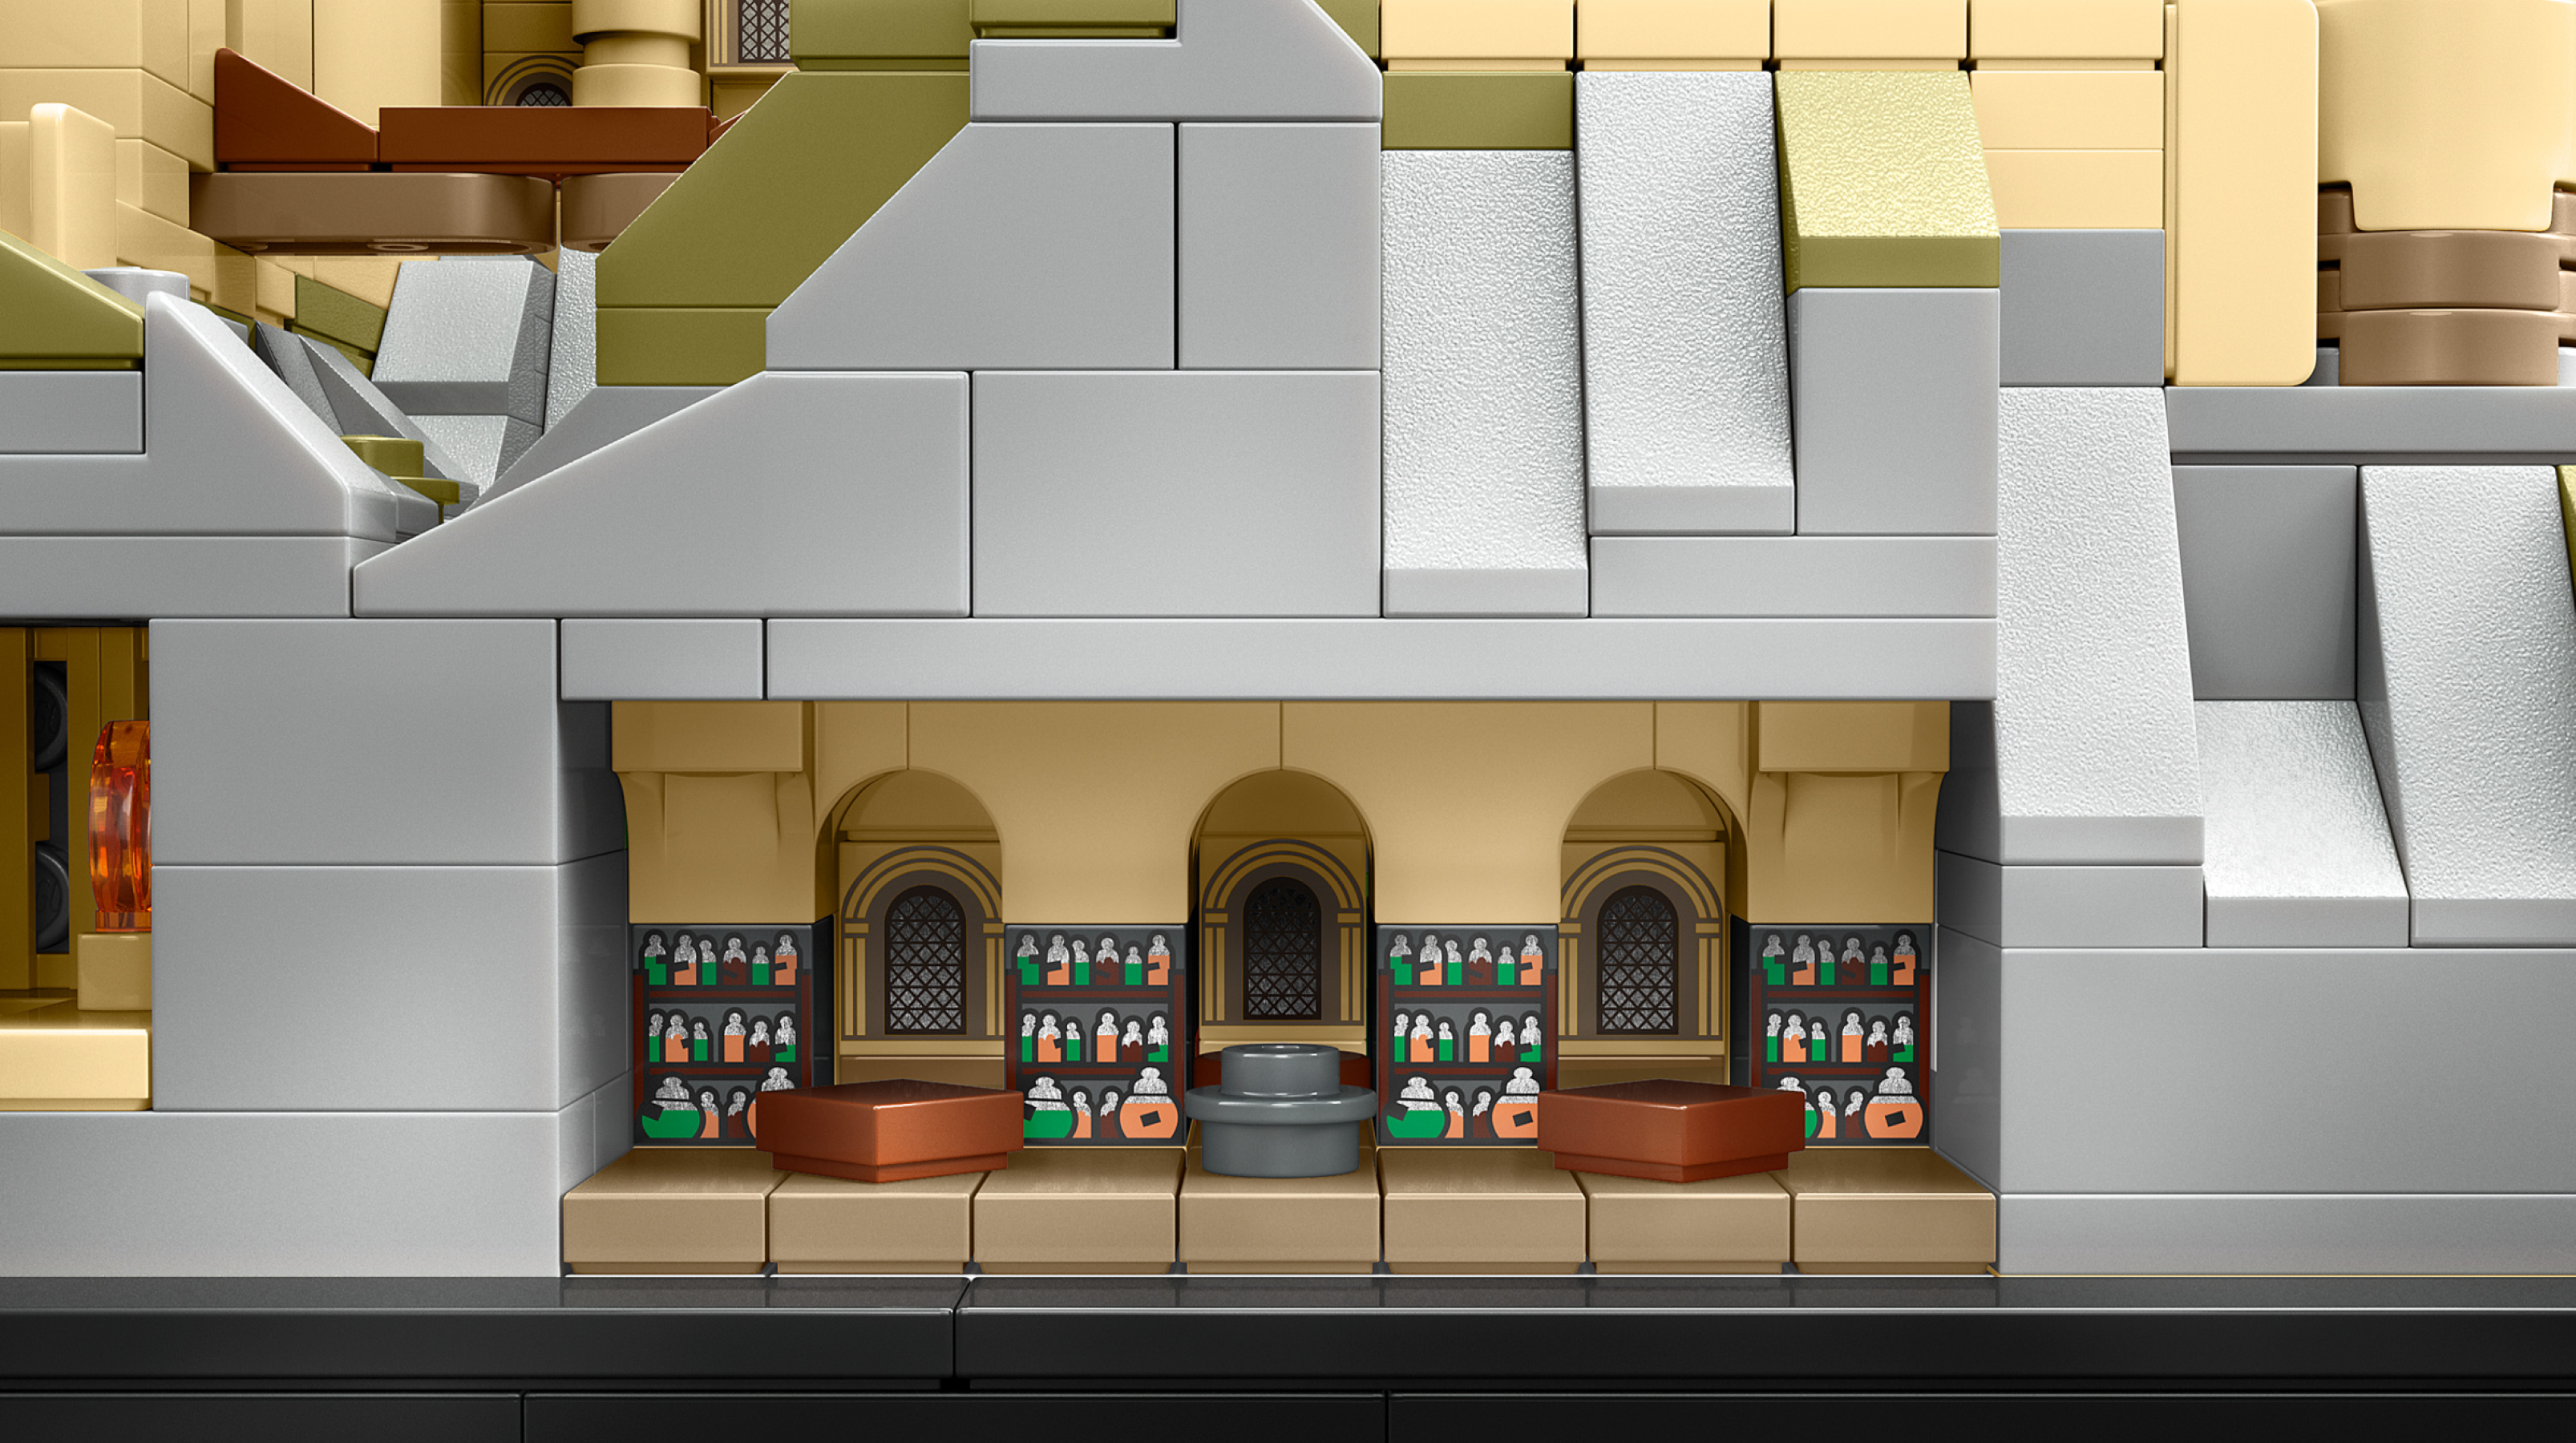 Nouveauté LEGO Harry Potter 76419 Hogwarts Castle & Grounds - HelloBricks